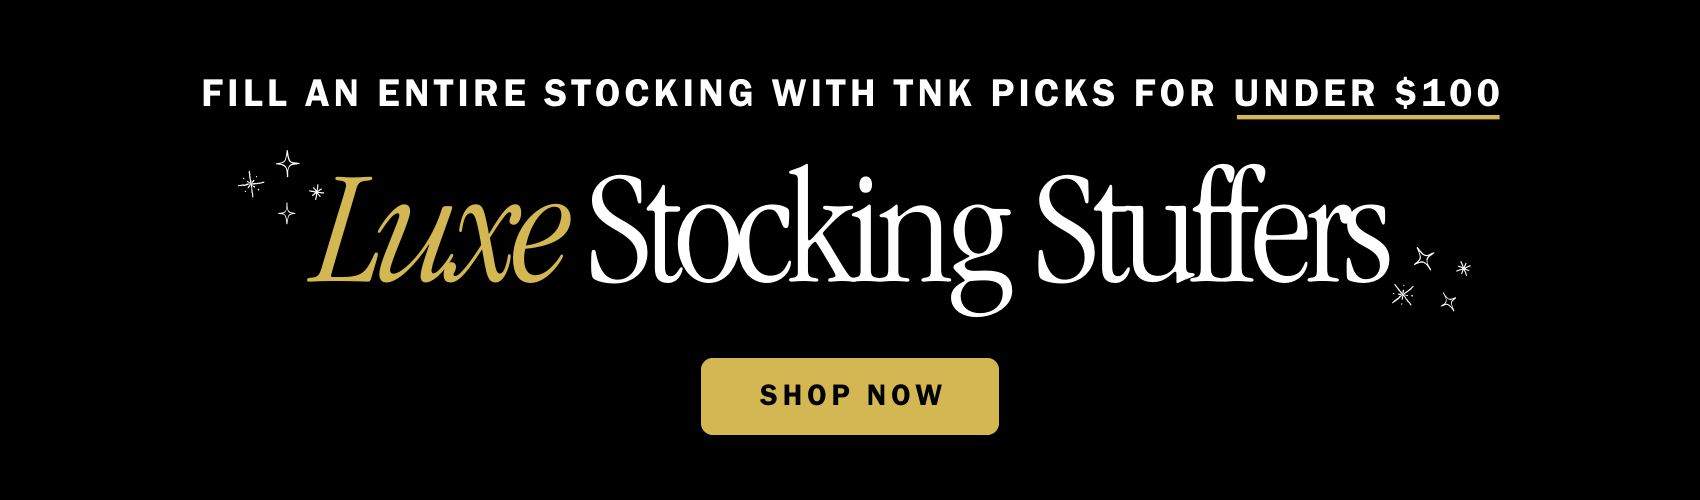 TNK Stocking Stuffer banner.